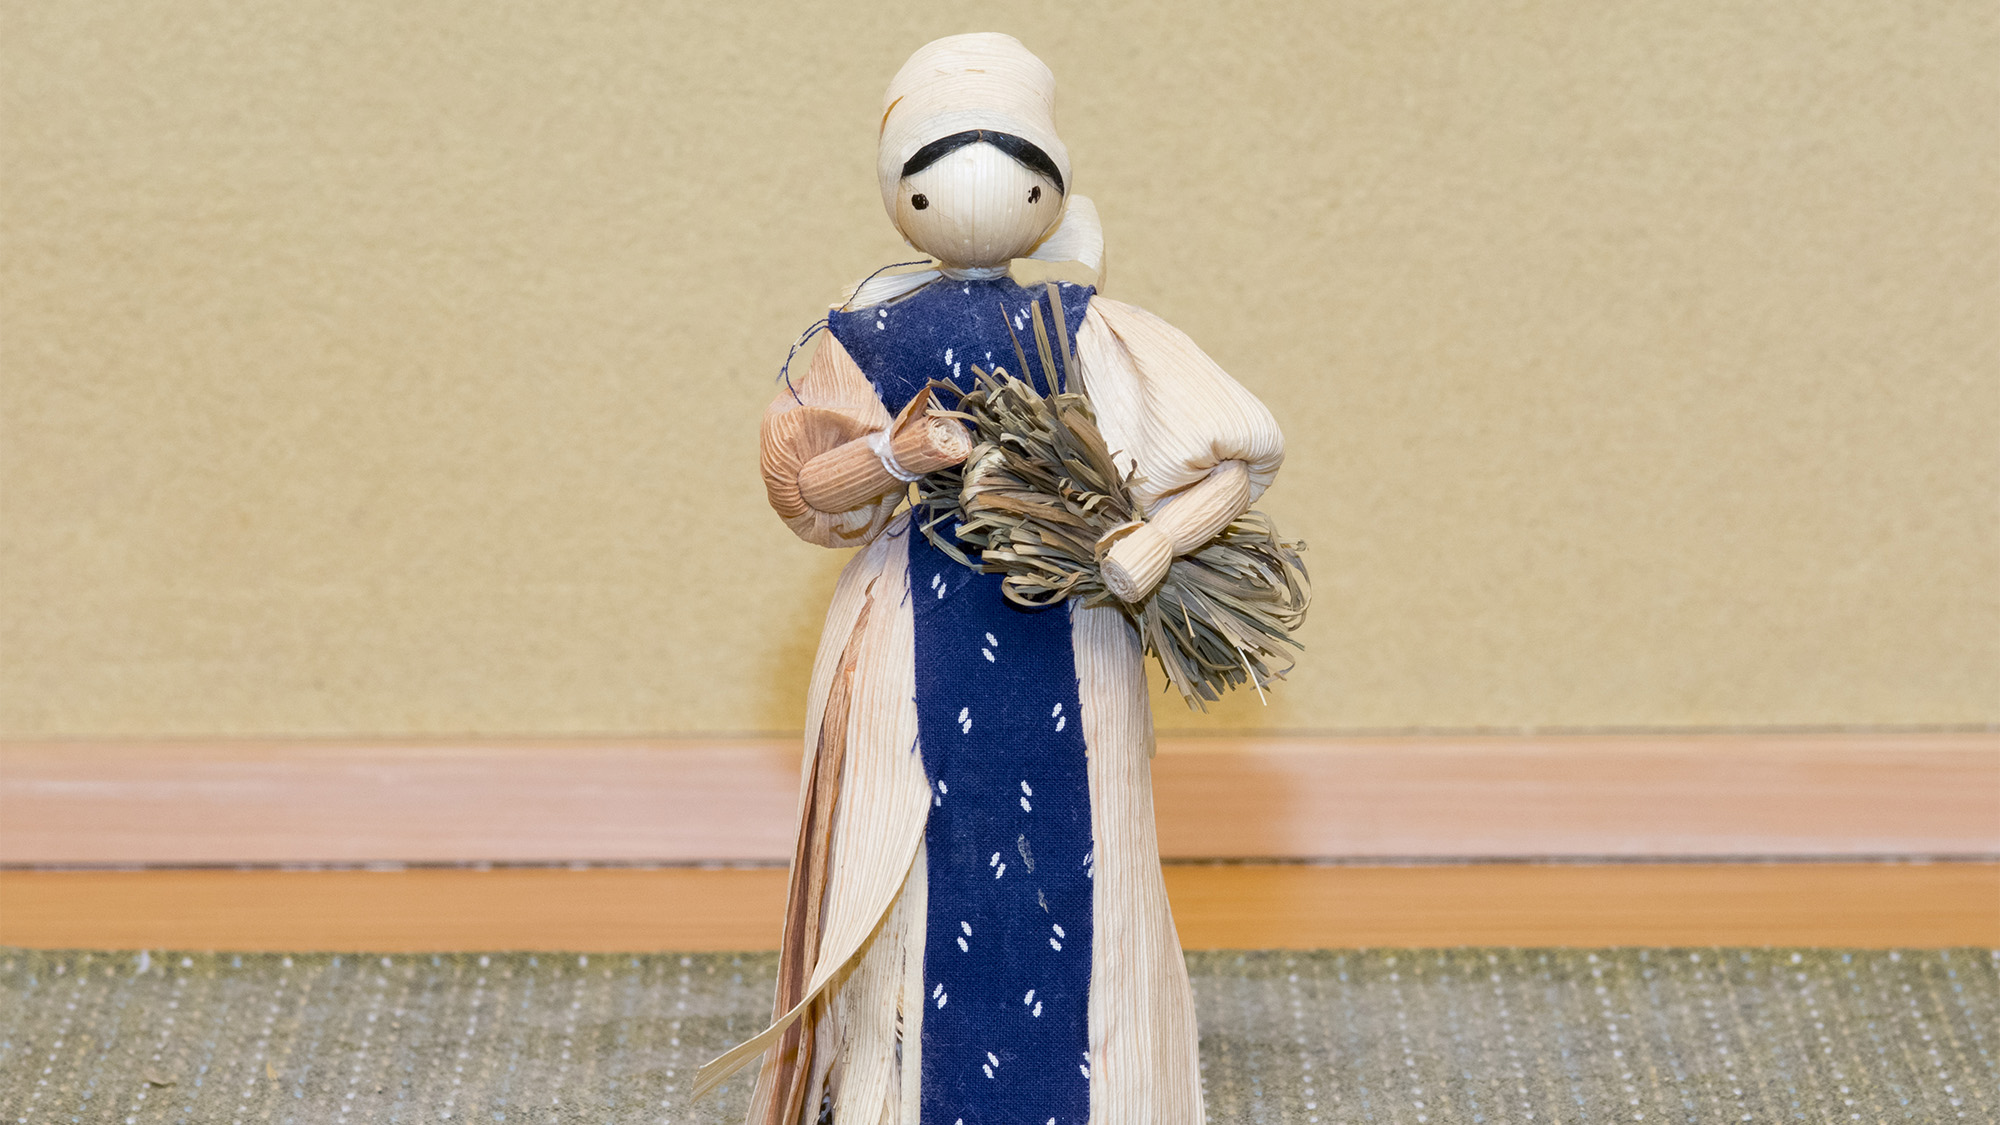 ・【インテリア】可愛らしいスロヴァキアのコーン人形が飾っております